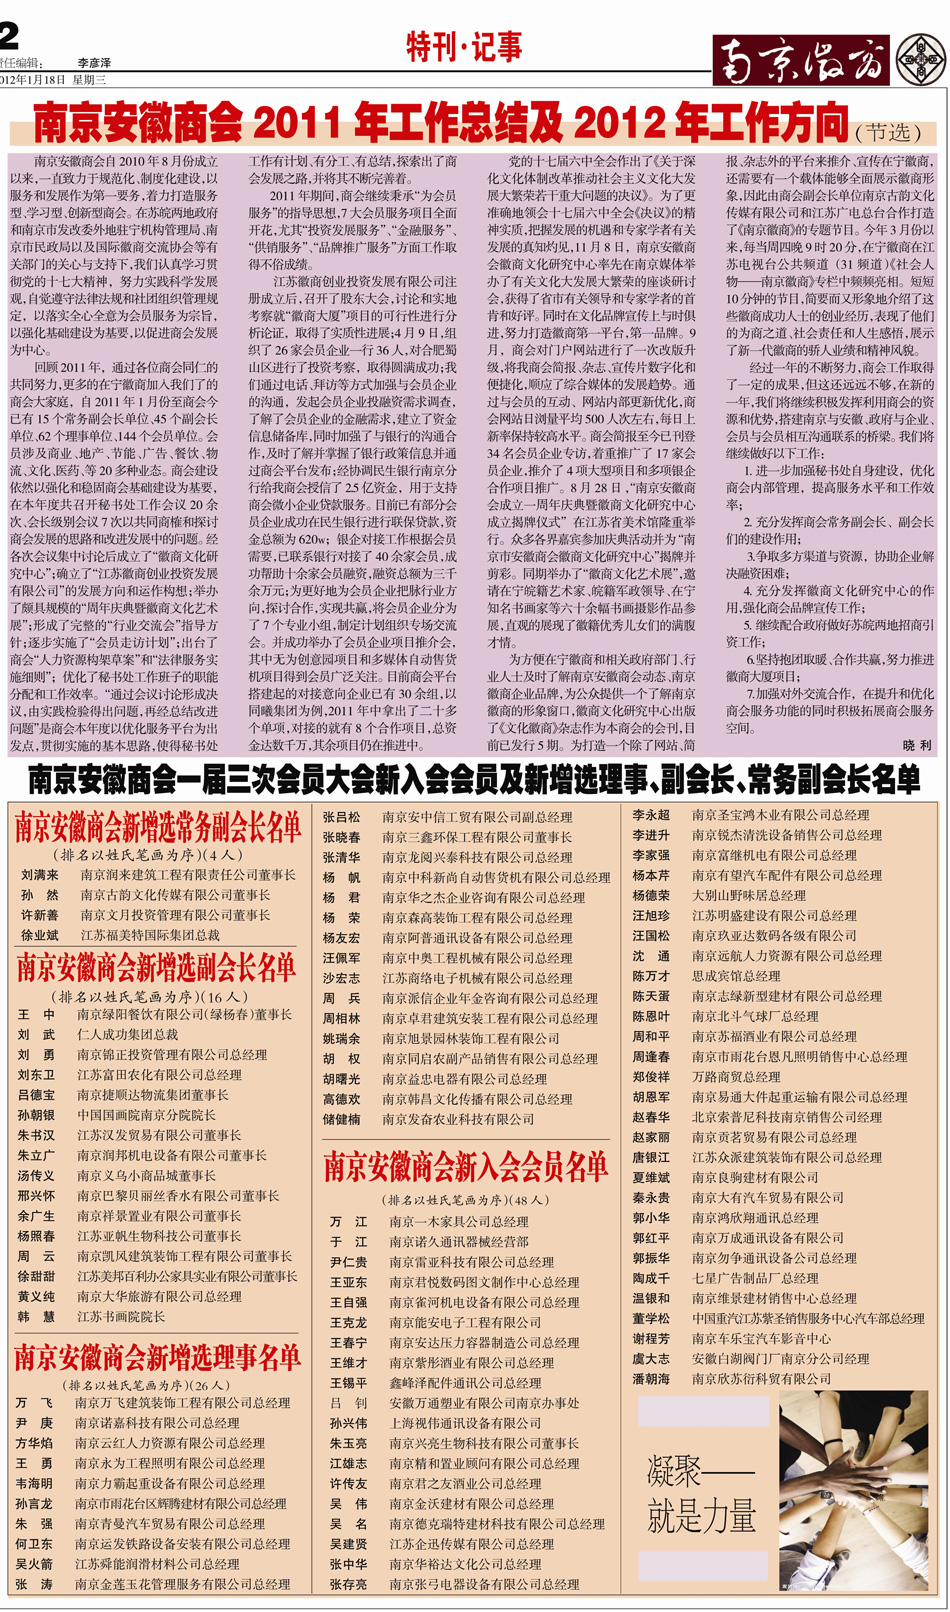 《南京徽商》2012年第1期总第12期